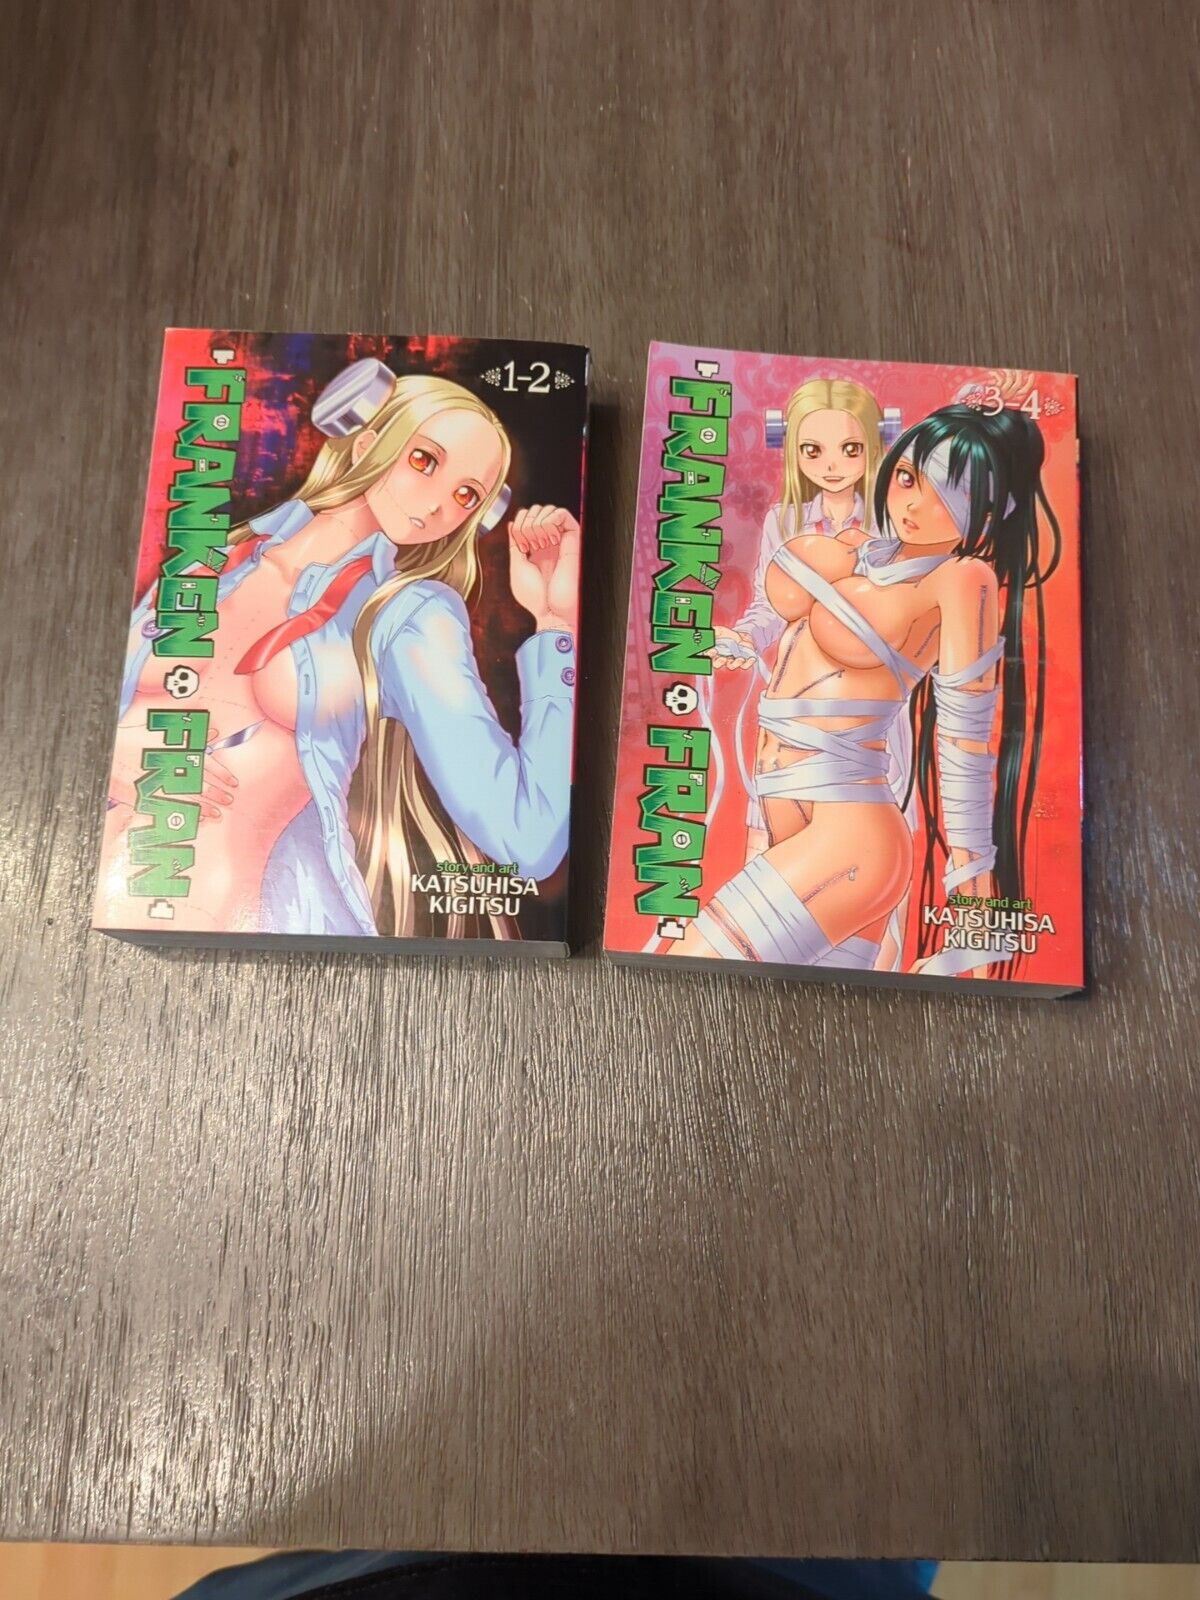 Franken Fran Omnibus English Manga Volumes 1-2 & 3-4 Set (2016, Rare OOP) 1st